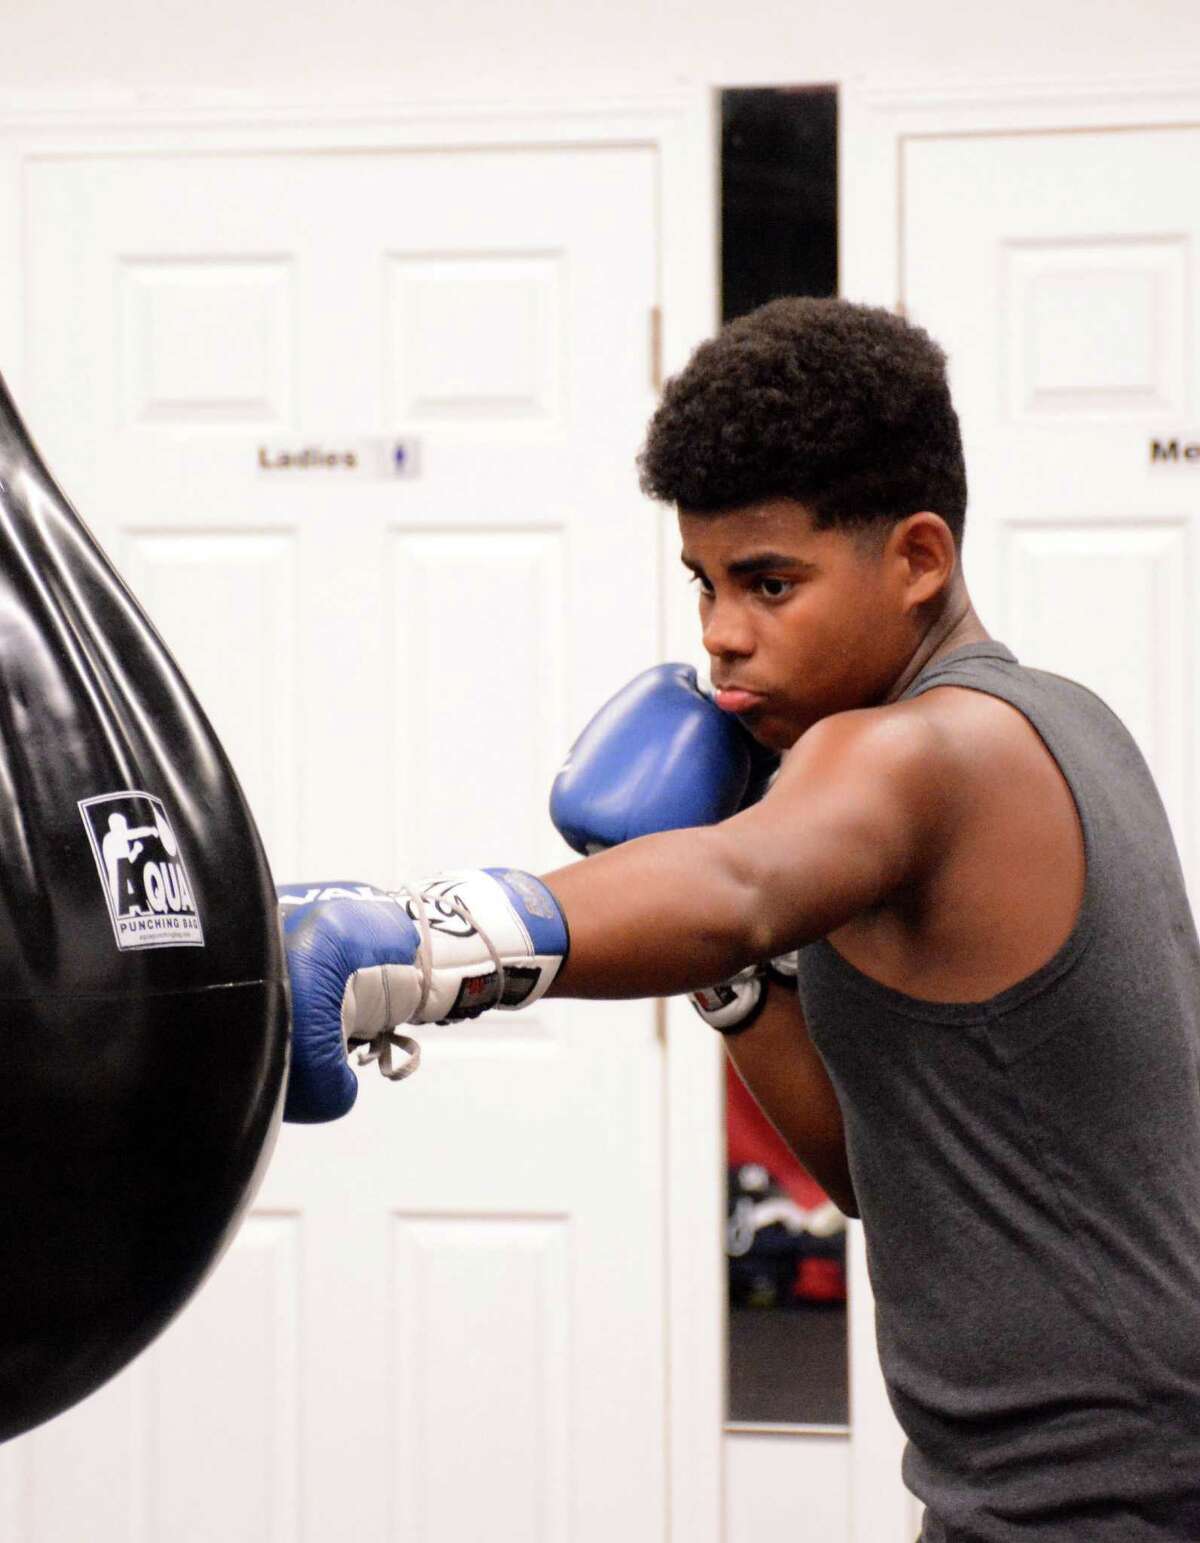 Amateur boxer Feliz advances to Silver Gloves regionals image photo